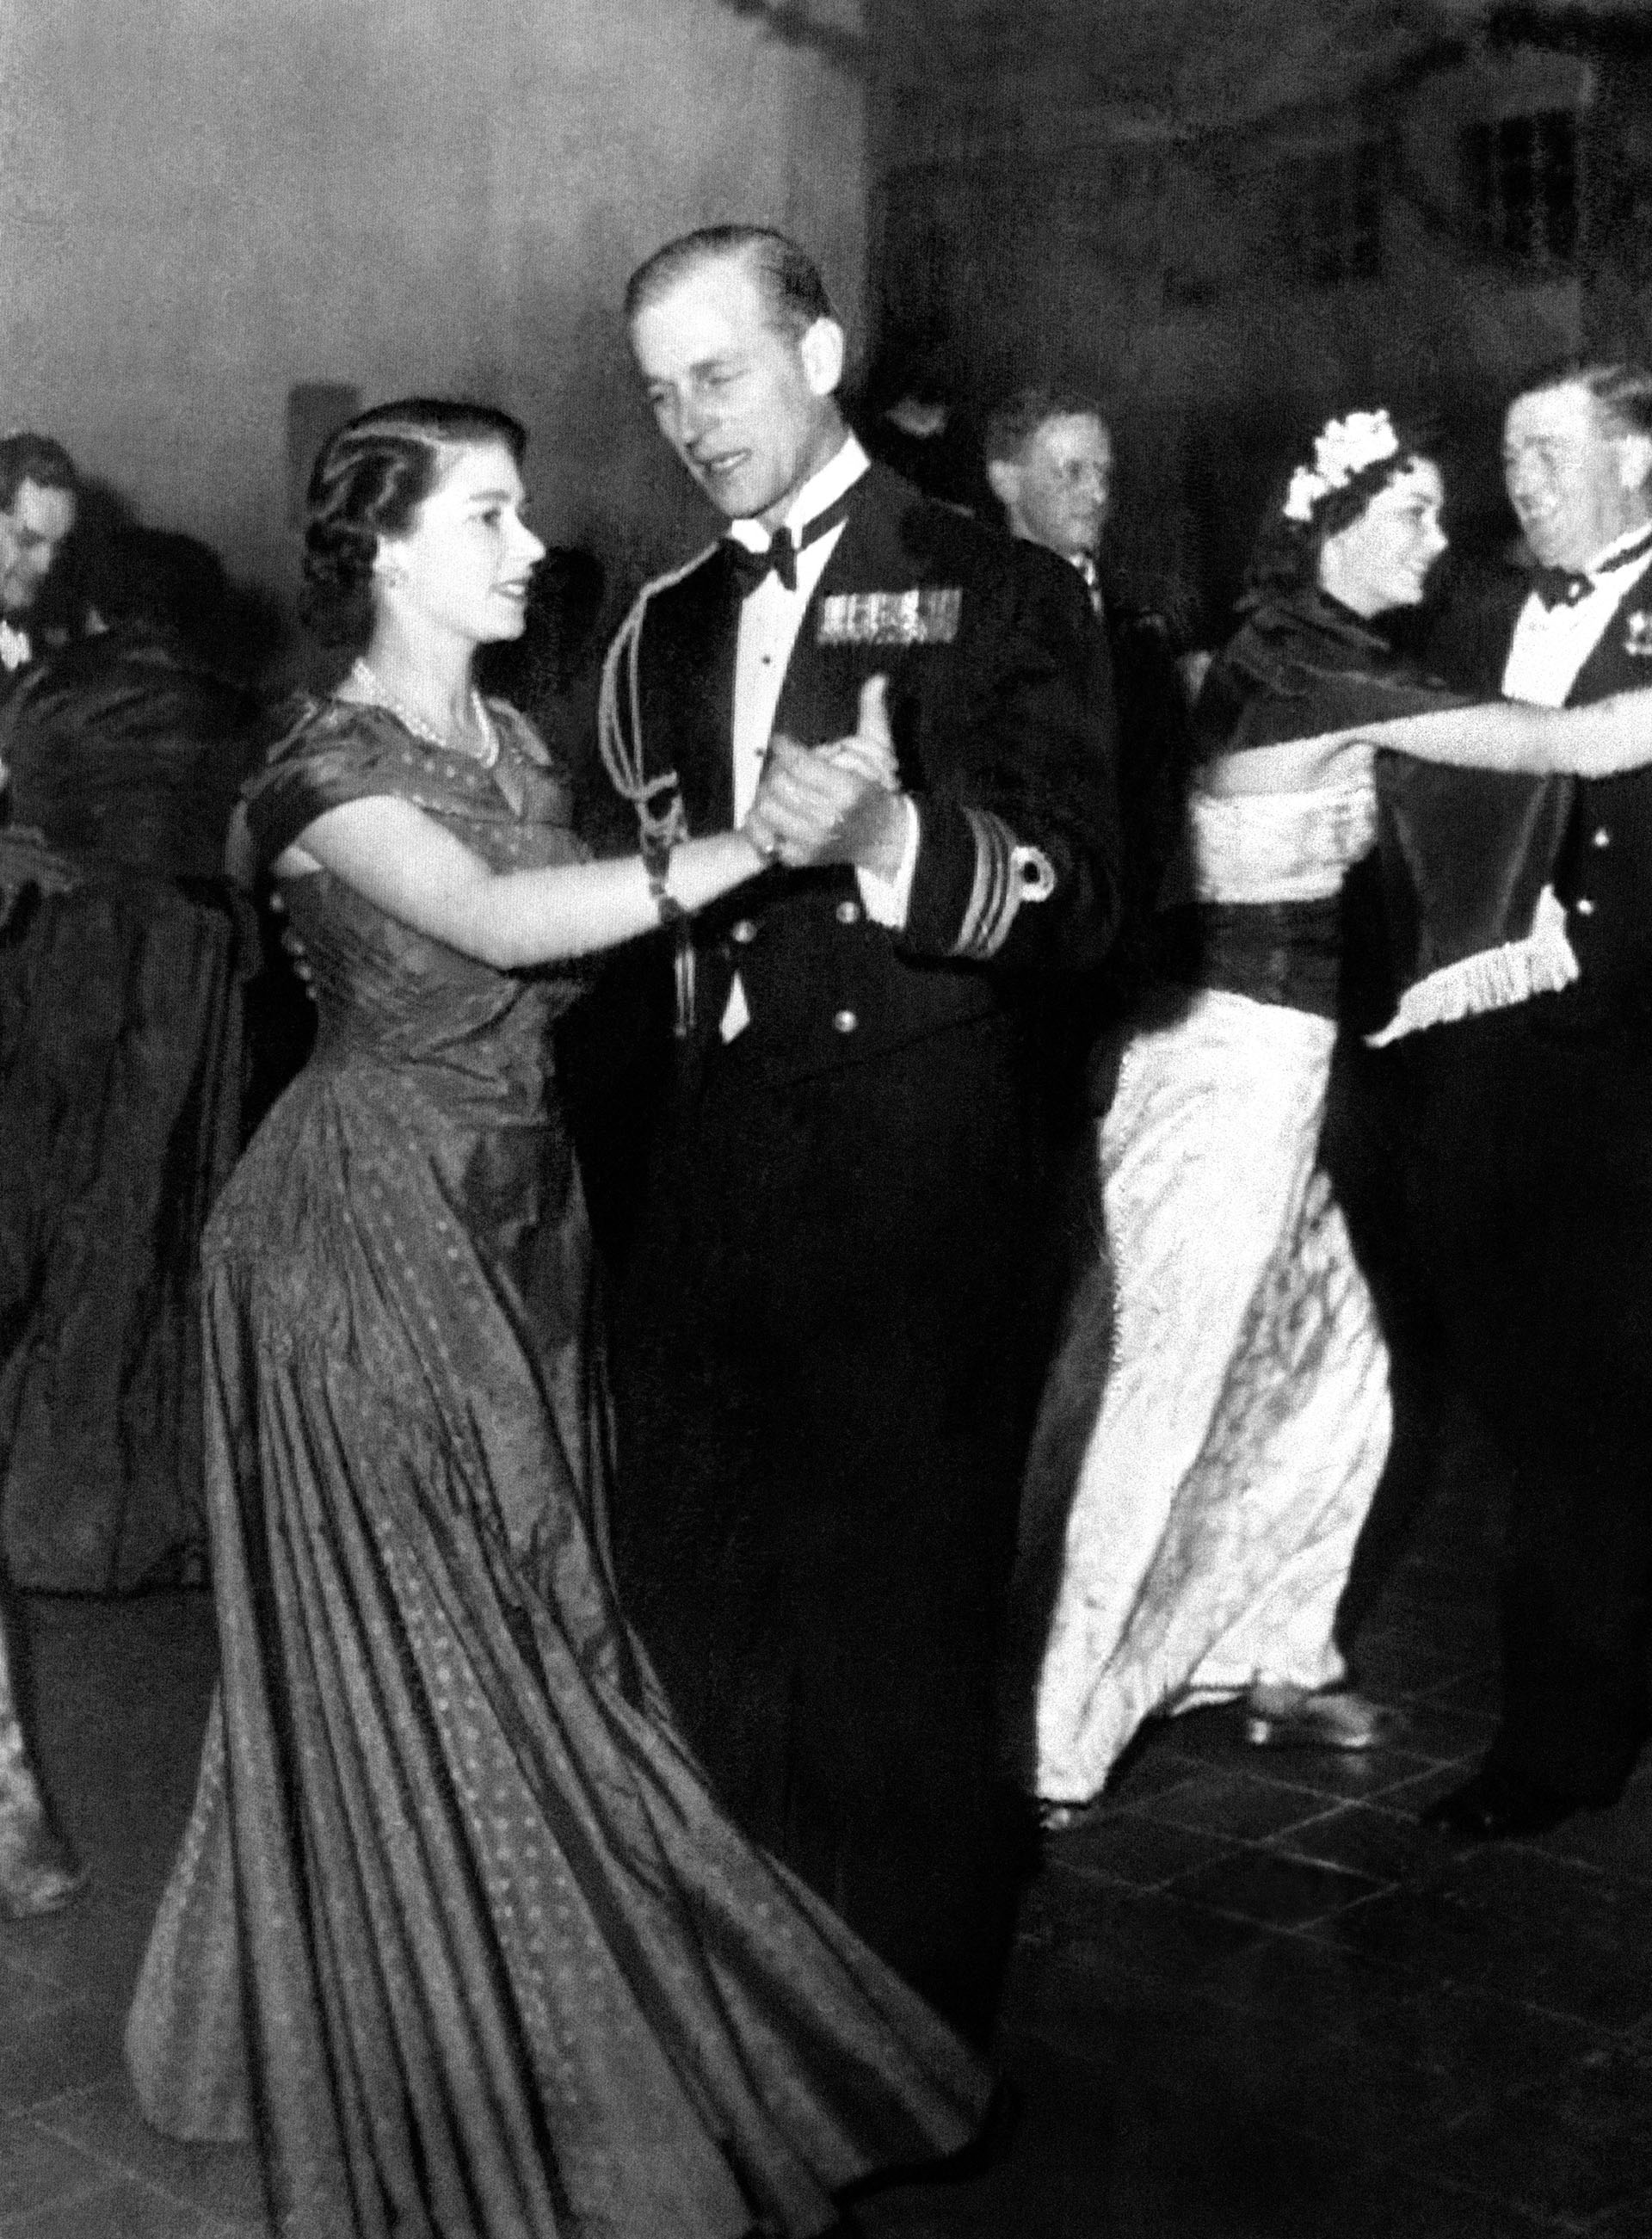 El 18 de diciembre de 1950. La princesa Isabel de Inglaterra, la futura reina Isabel II, y el príncipe Felipe de Gran Bretaña, duque de Edimburgo durante un baile organizado por la Royal Navy